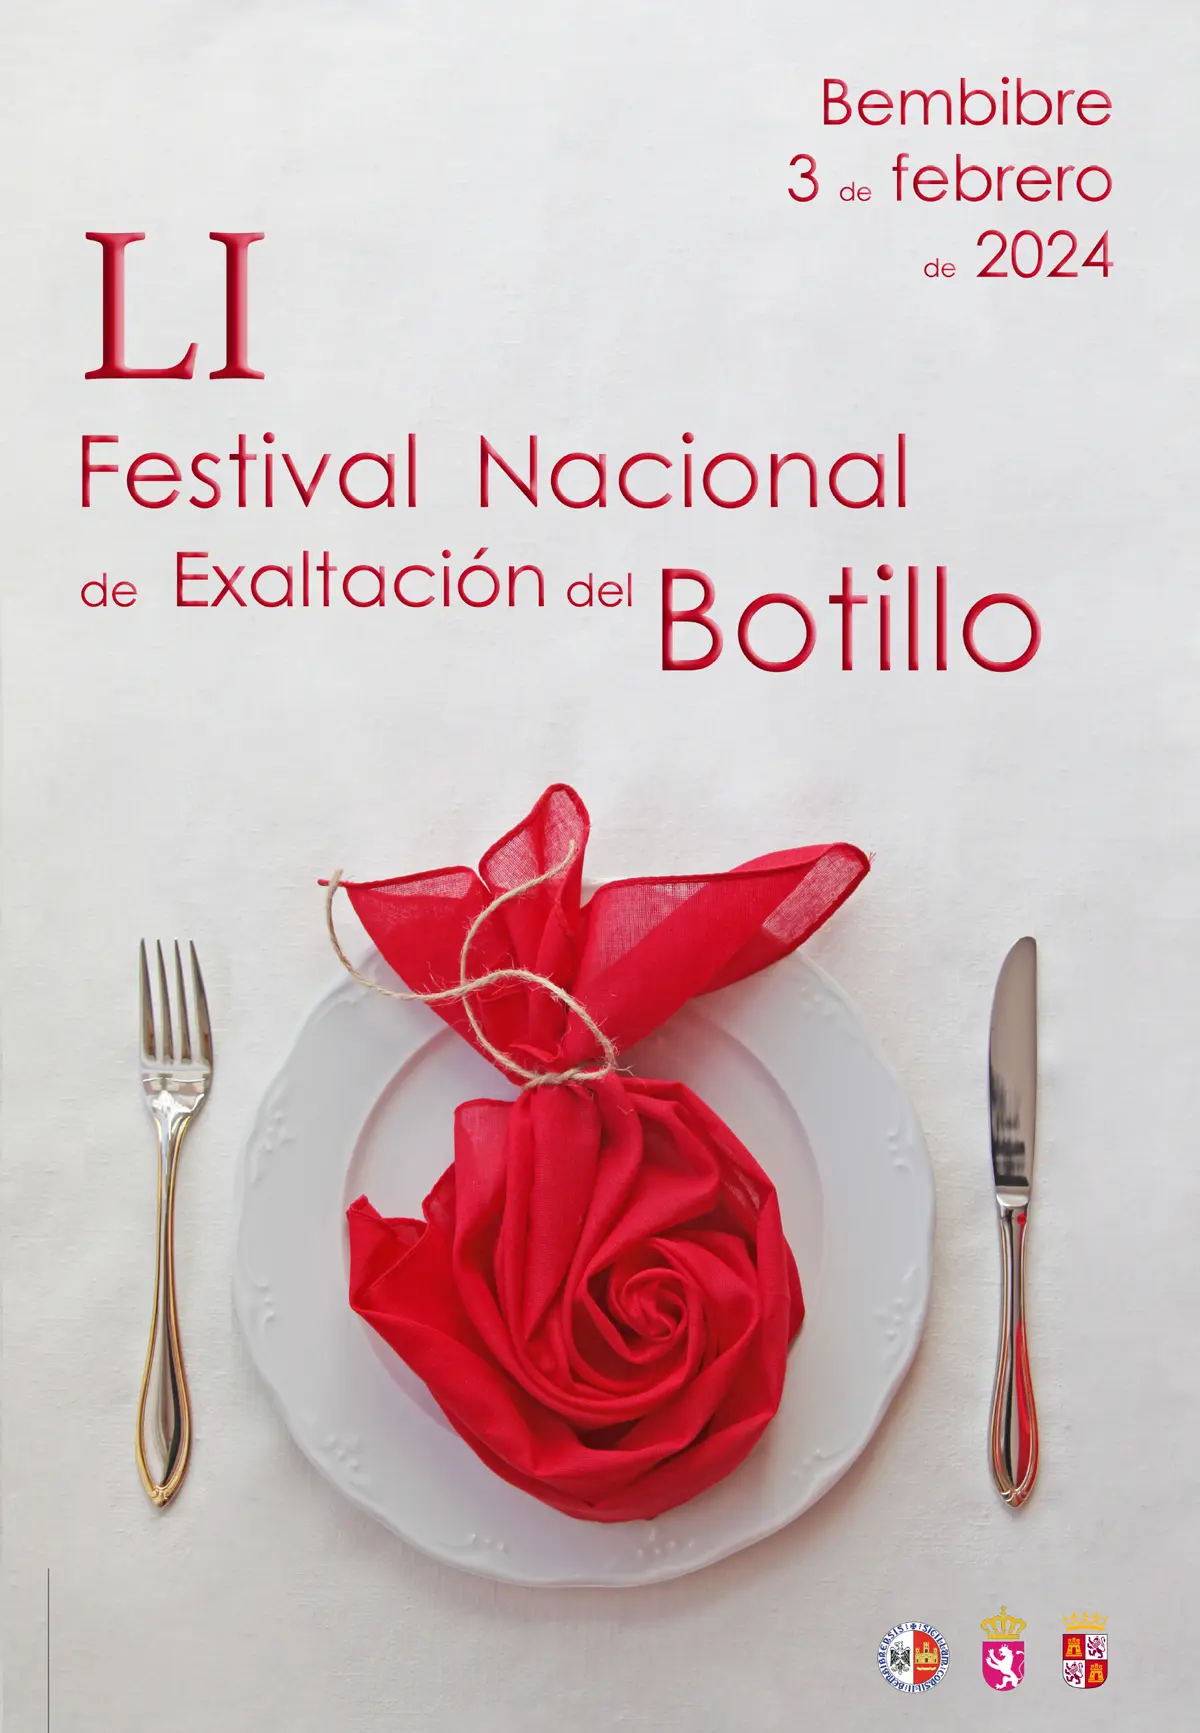 El cartel del LI Festival Nacional de Exaltación del Botillo de Bembibre es una obra de Susana Gomes